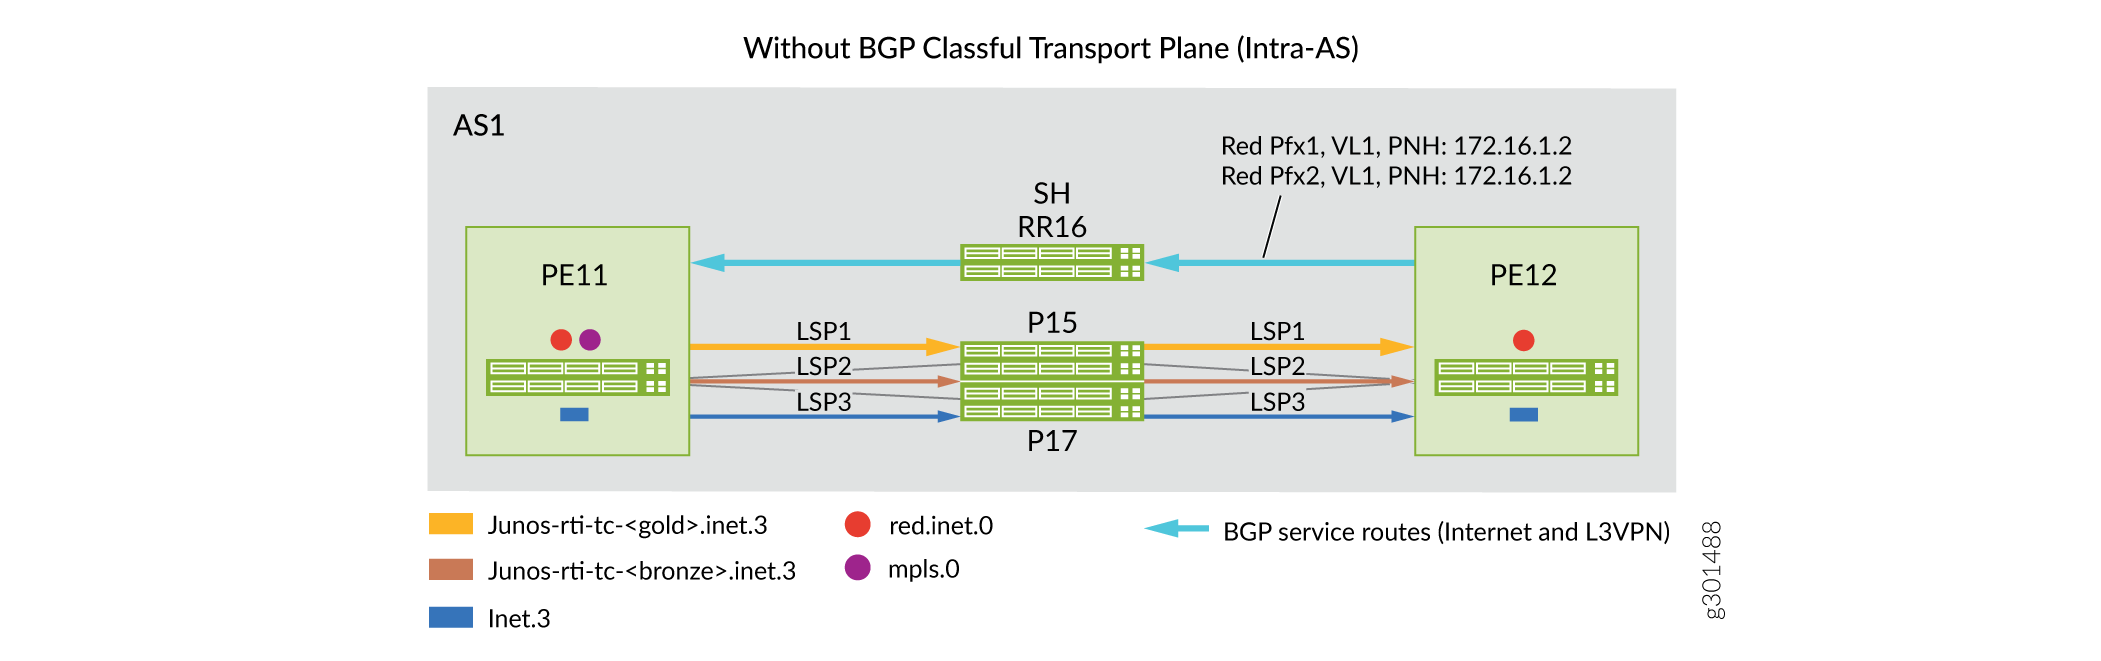 Intra-AS-Domäne: Vorher-Nachher-Szenarien für die Implementierung von BGP Classful Transport Planes